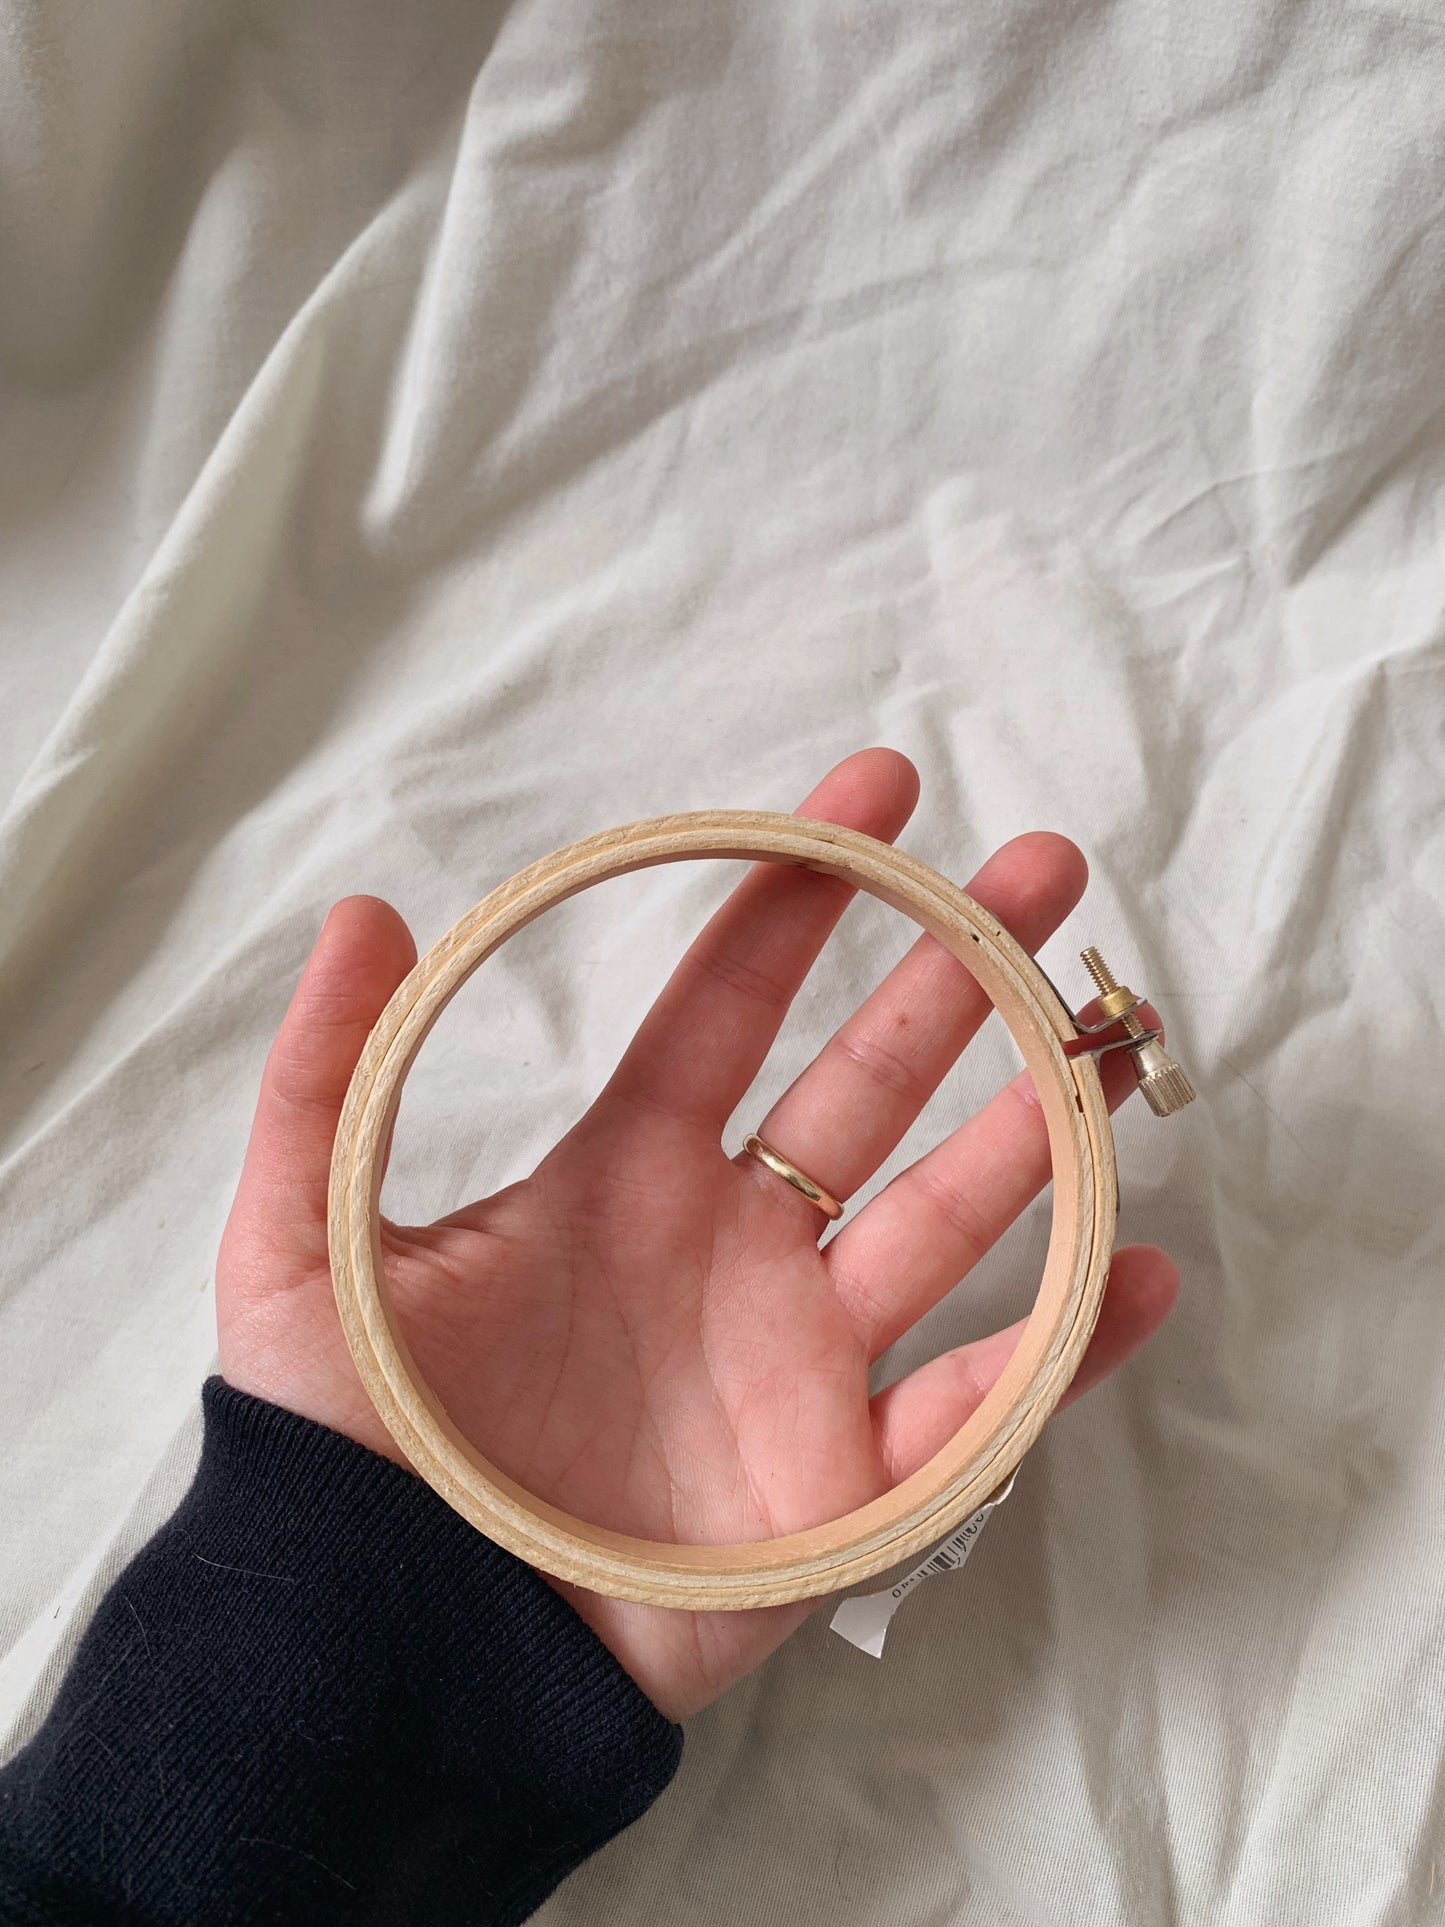 4” Embroidery Hoop